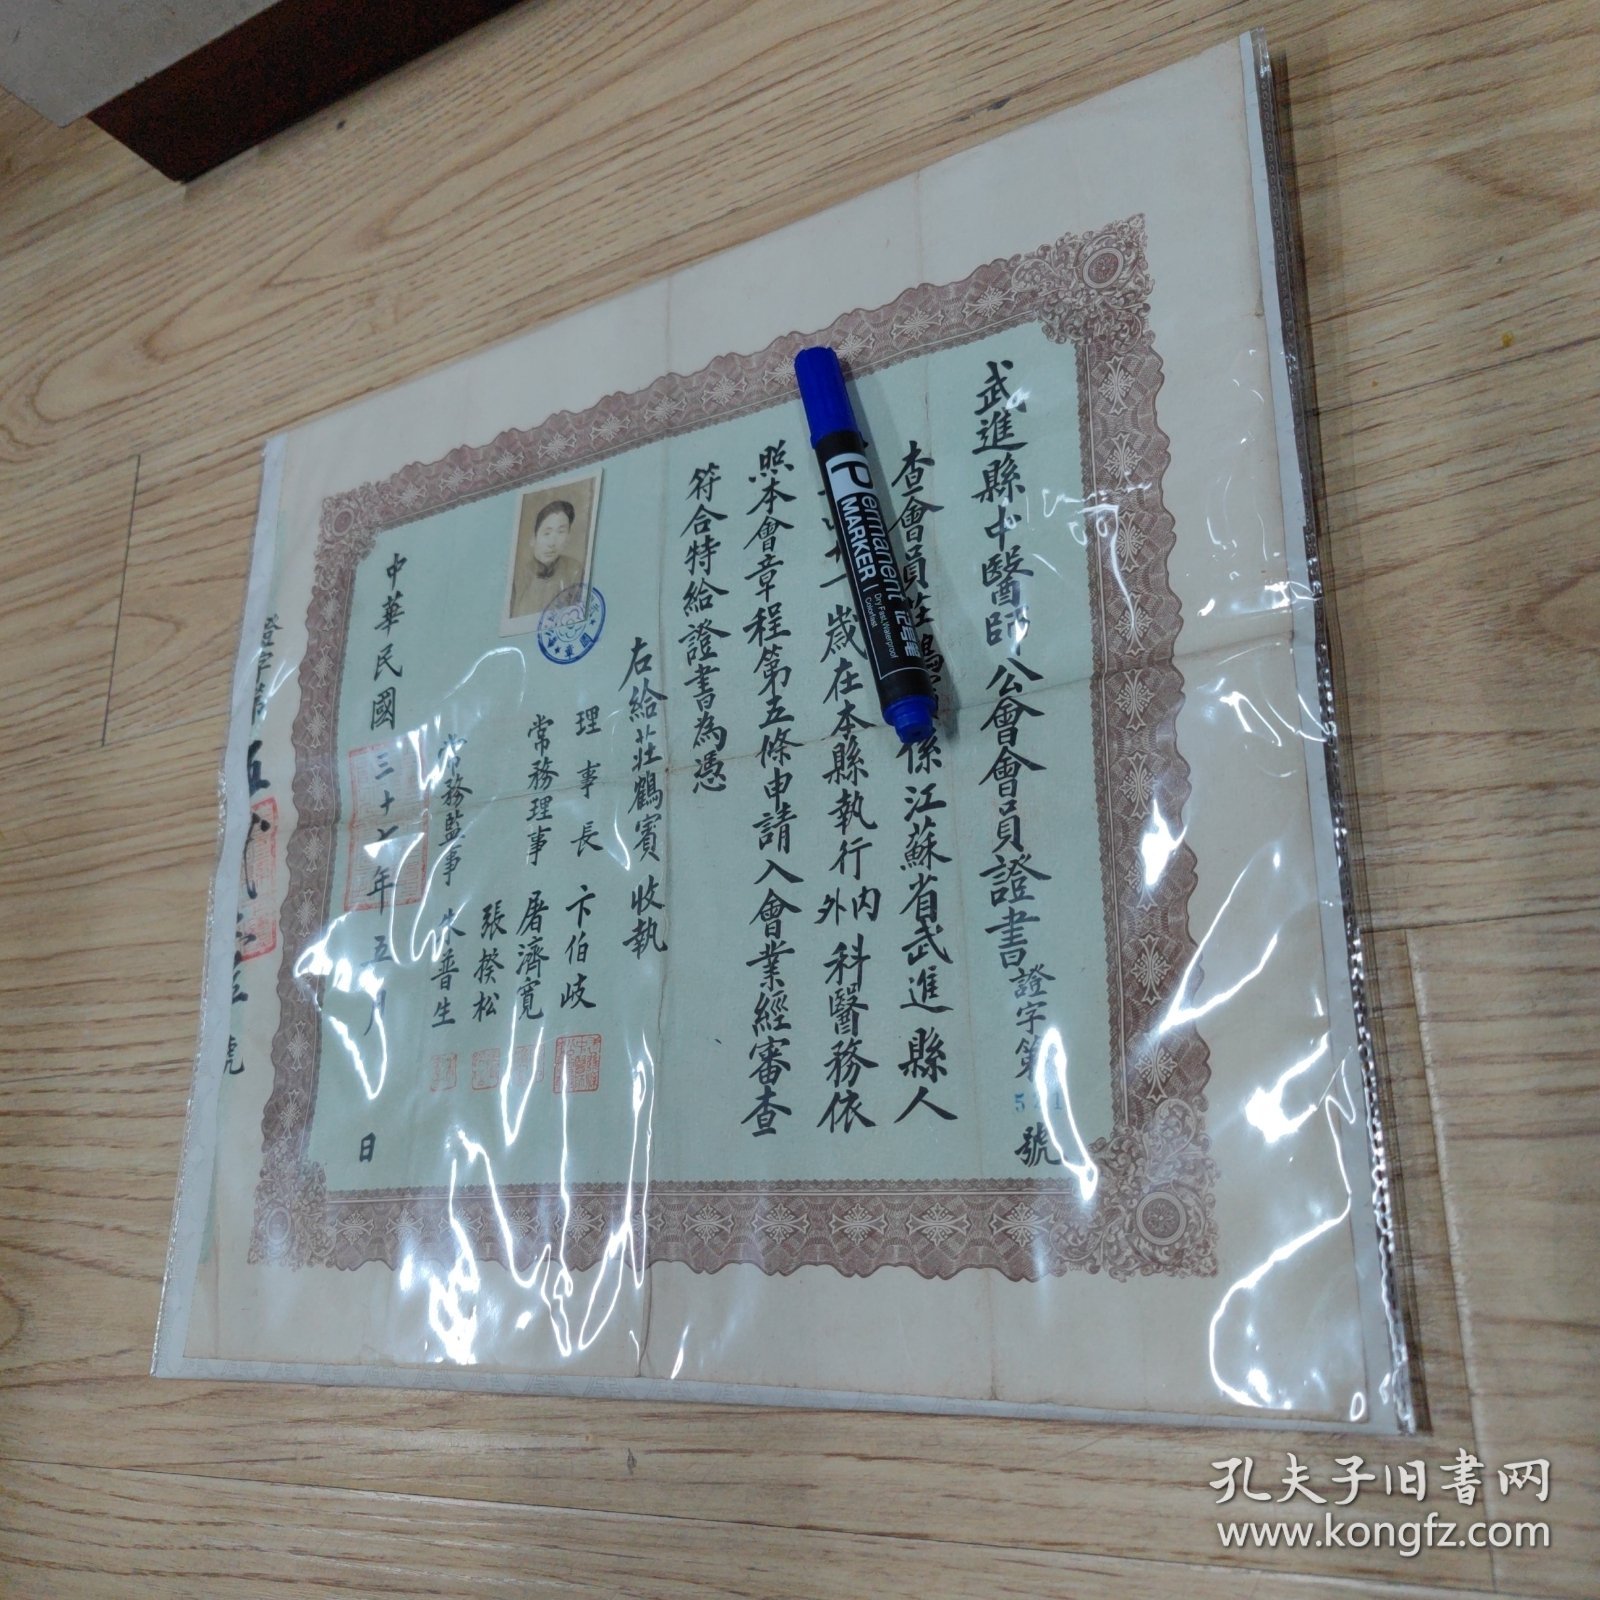 《武进县中医师公会会员证书》民国37年